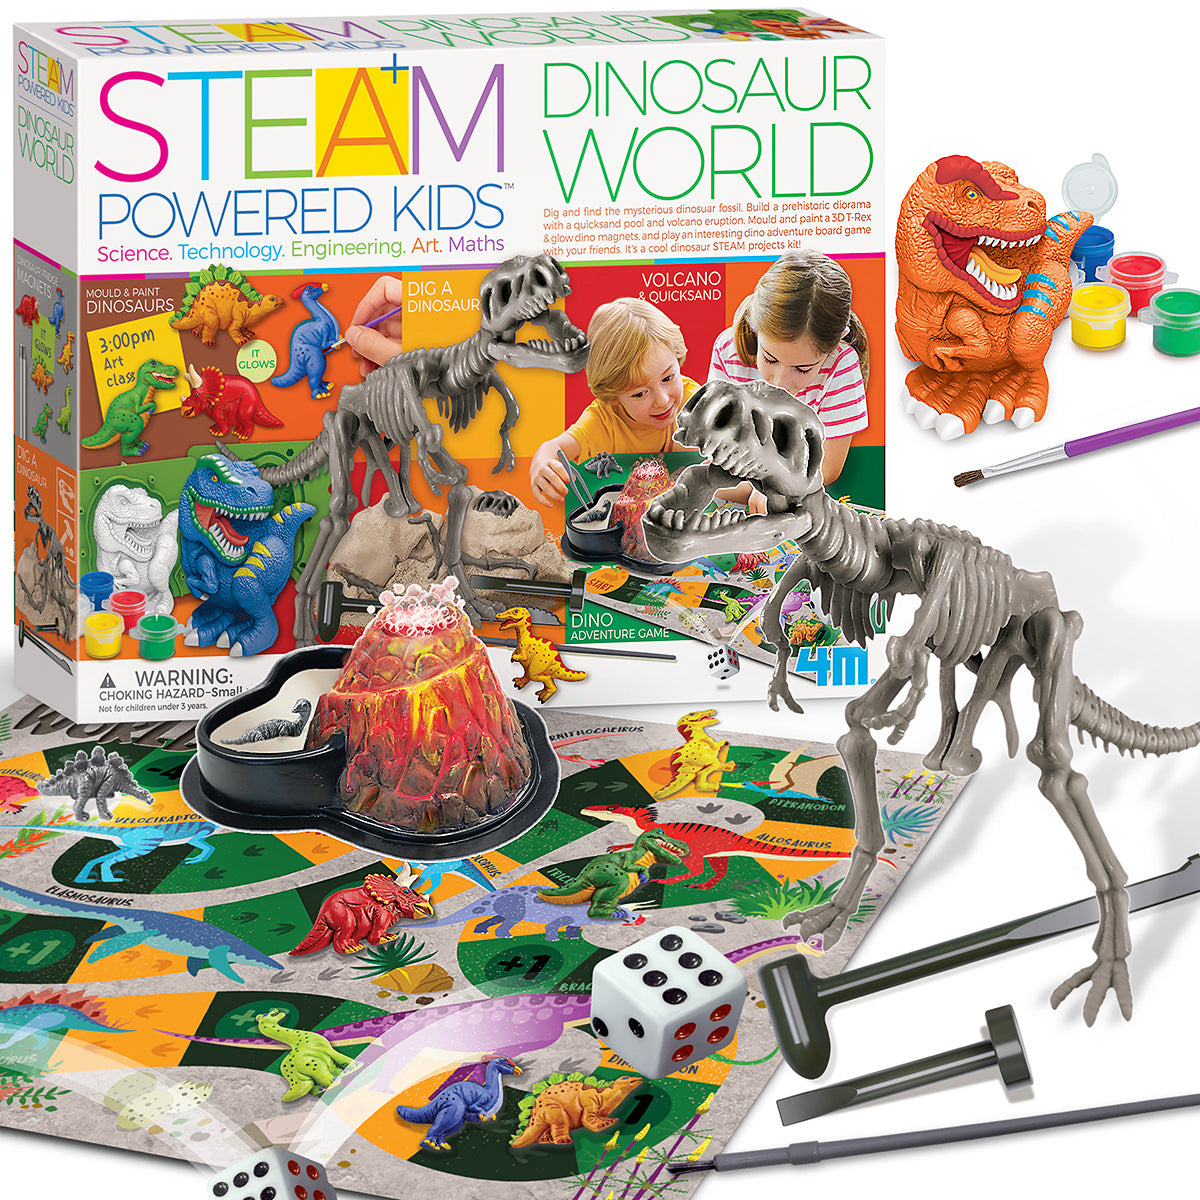 STEAM Powered Kids Dinosaur World